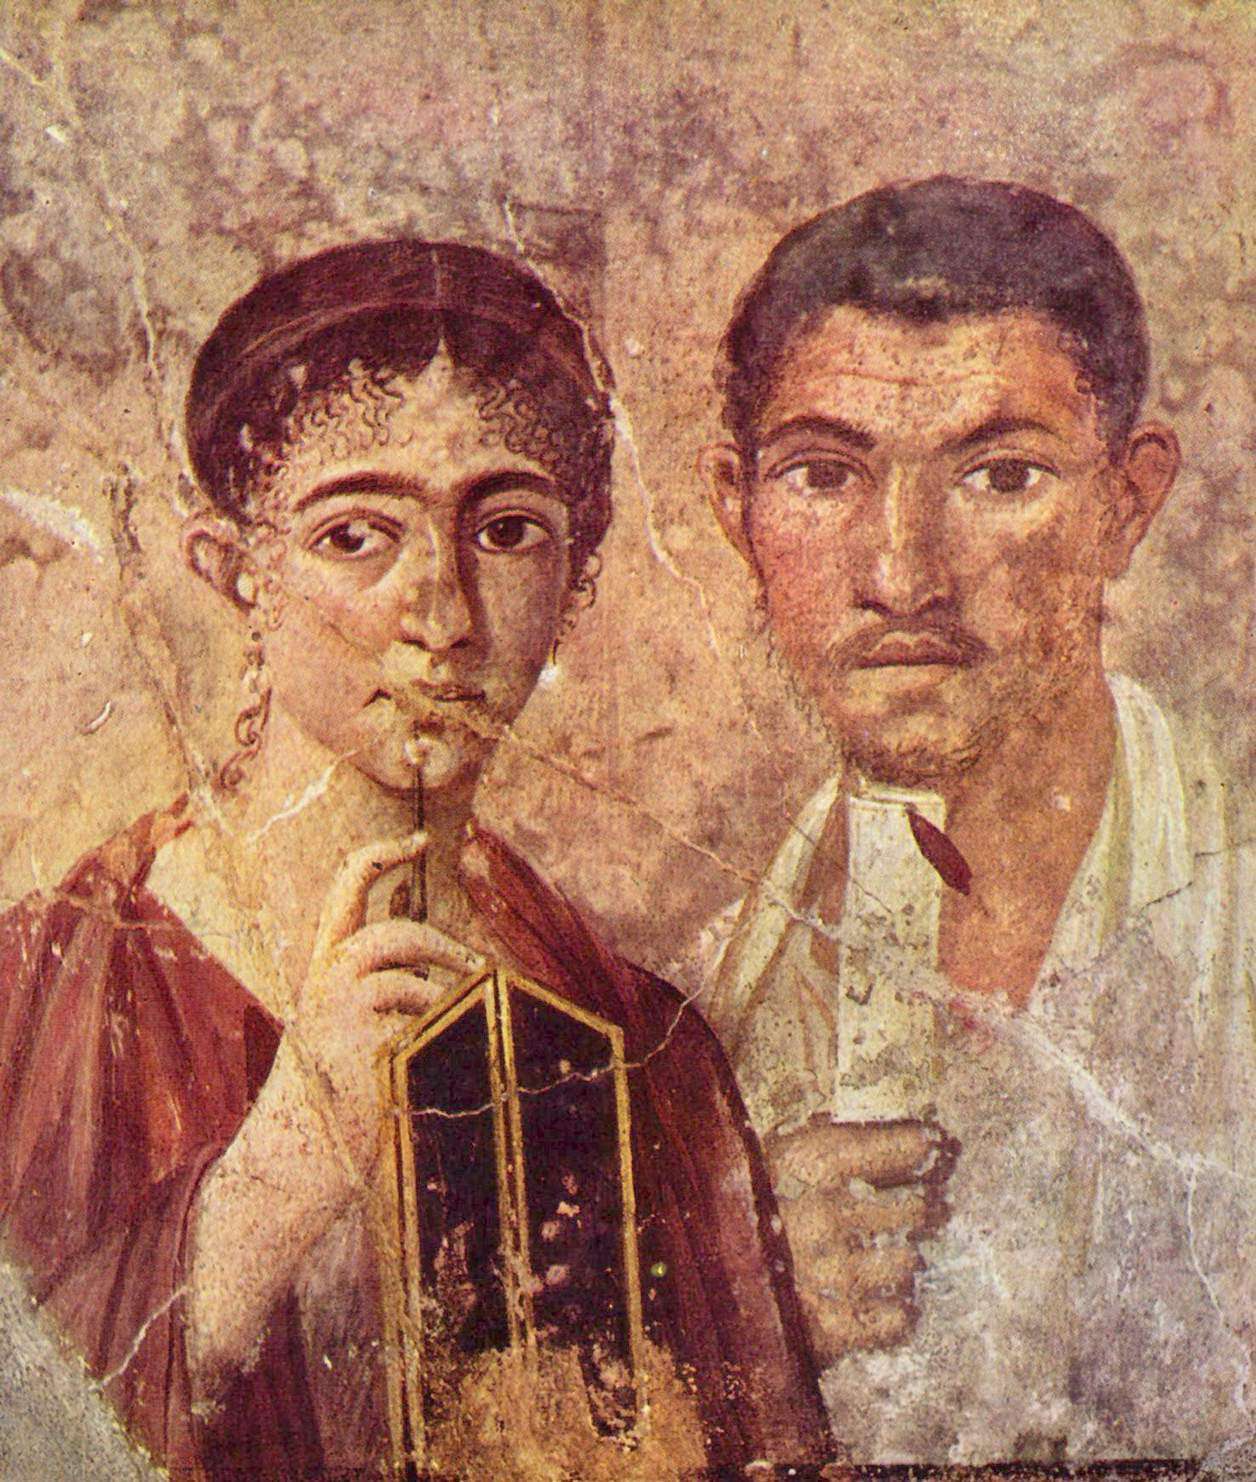 Πορτραίτο του Paquius Proculus και τη συζύγου του από την πόλη της Πομπηίας. Museo Archeologico Nazionale (Νάπολη), περ. 20-30 μ.Χ.